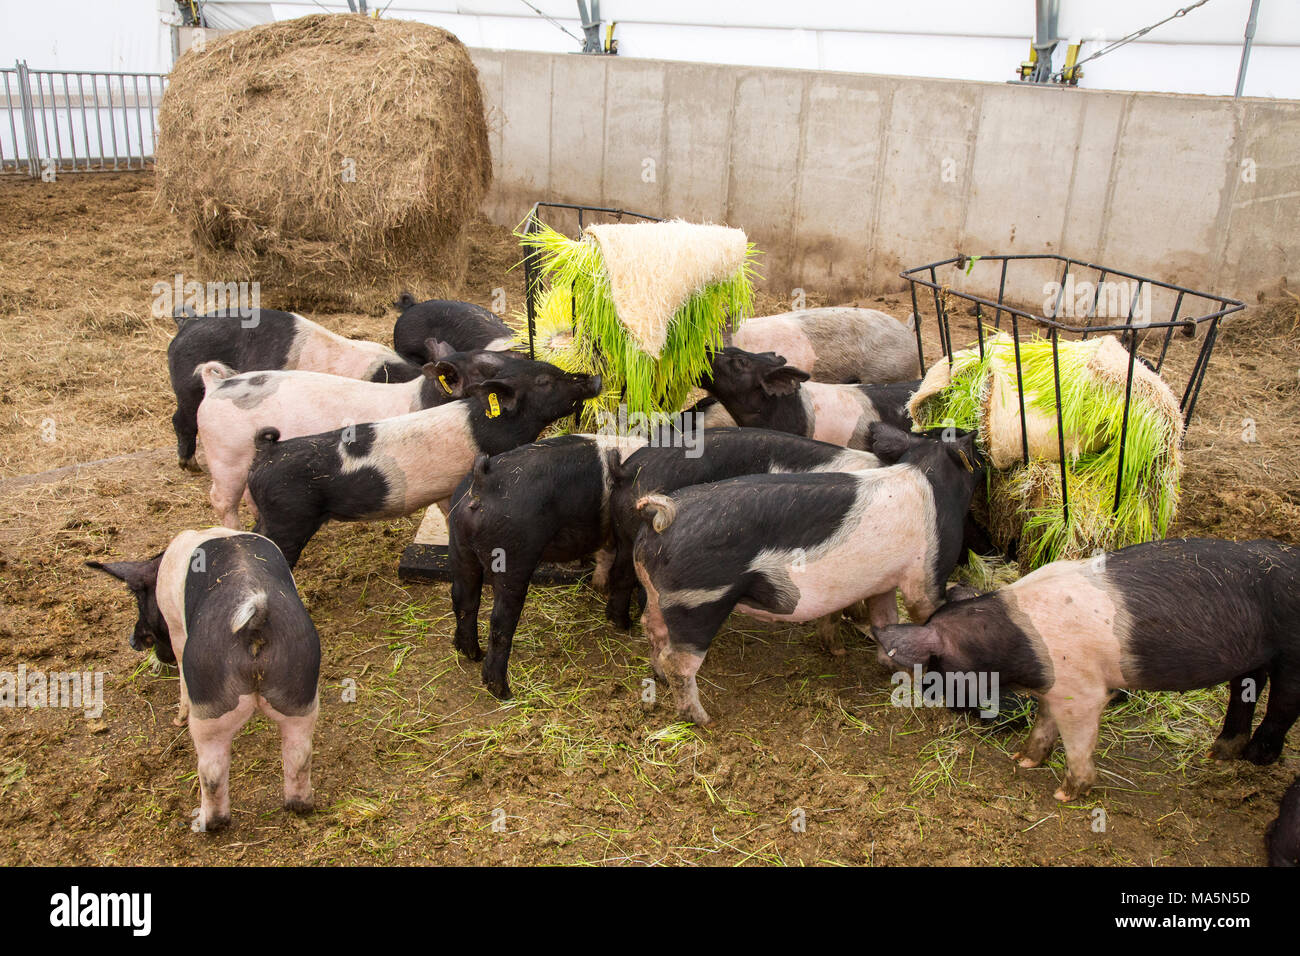 L'agriculture hydroponique. L'alimentation des porcs l'orge cultivées en hydroponique. Galena, Iowa, États-Unis. Banque D'Images